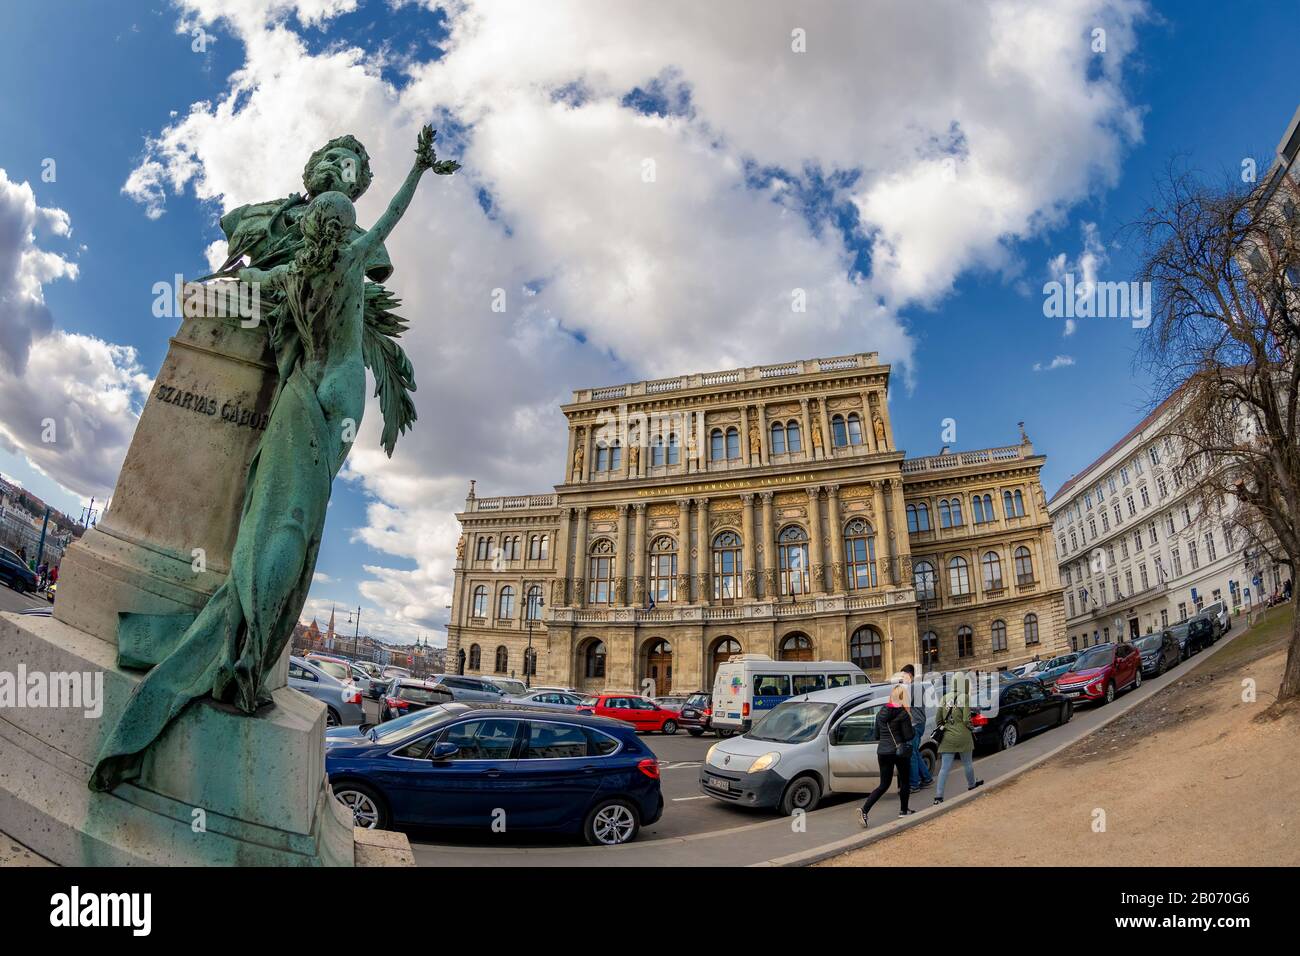 Vue sur le bâtiment de l'Académie hongroise des sciences de la place Szechenyi, avec une ancienne sculpture en bronze du philosophe et linguiste Gabor Szarvas. Banque D'Images